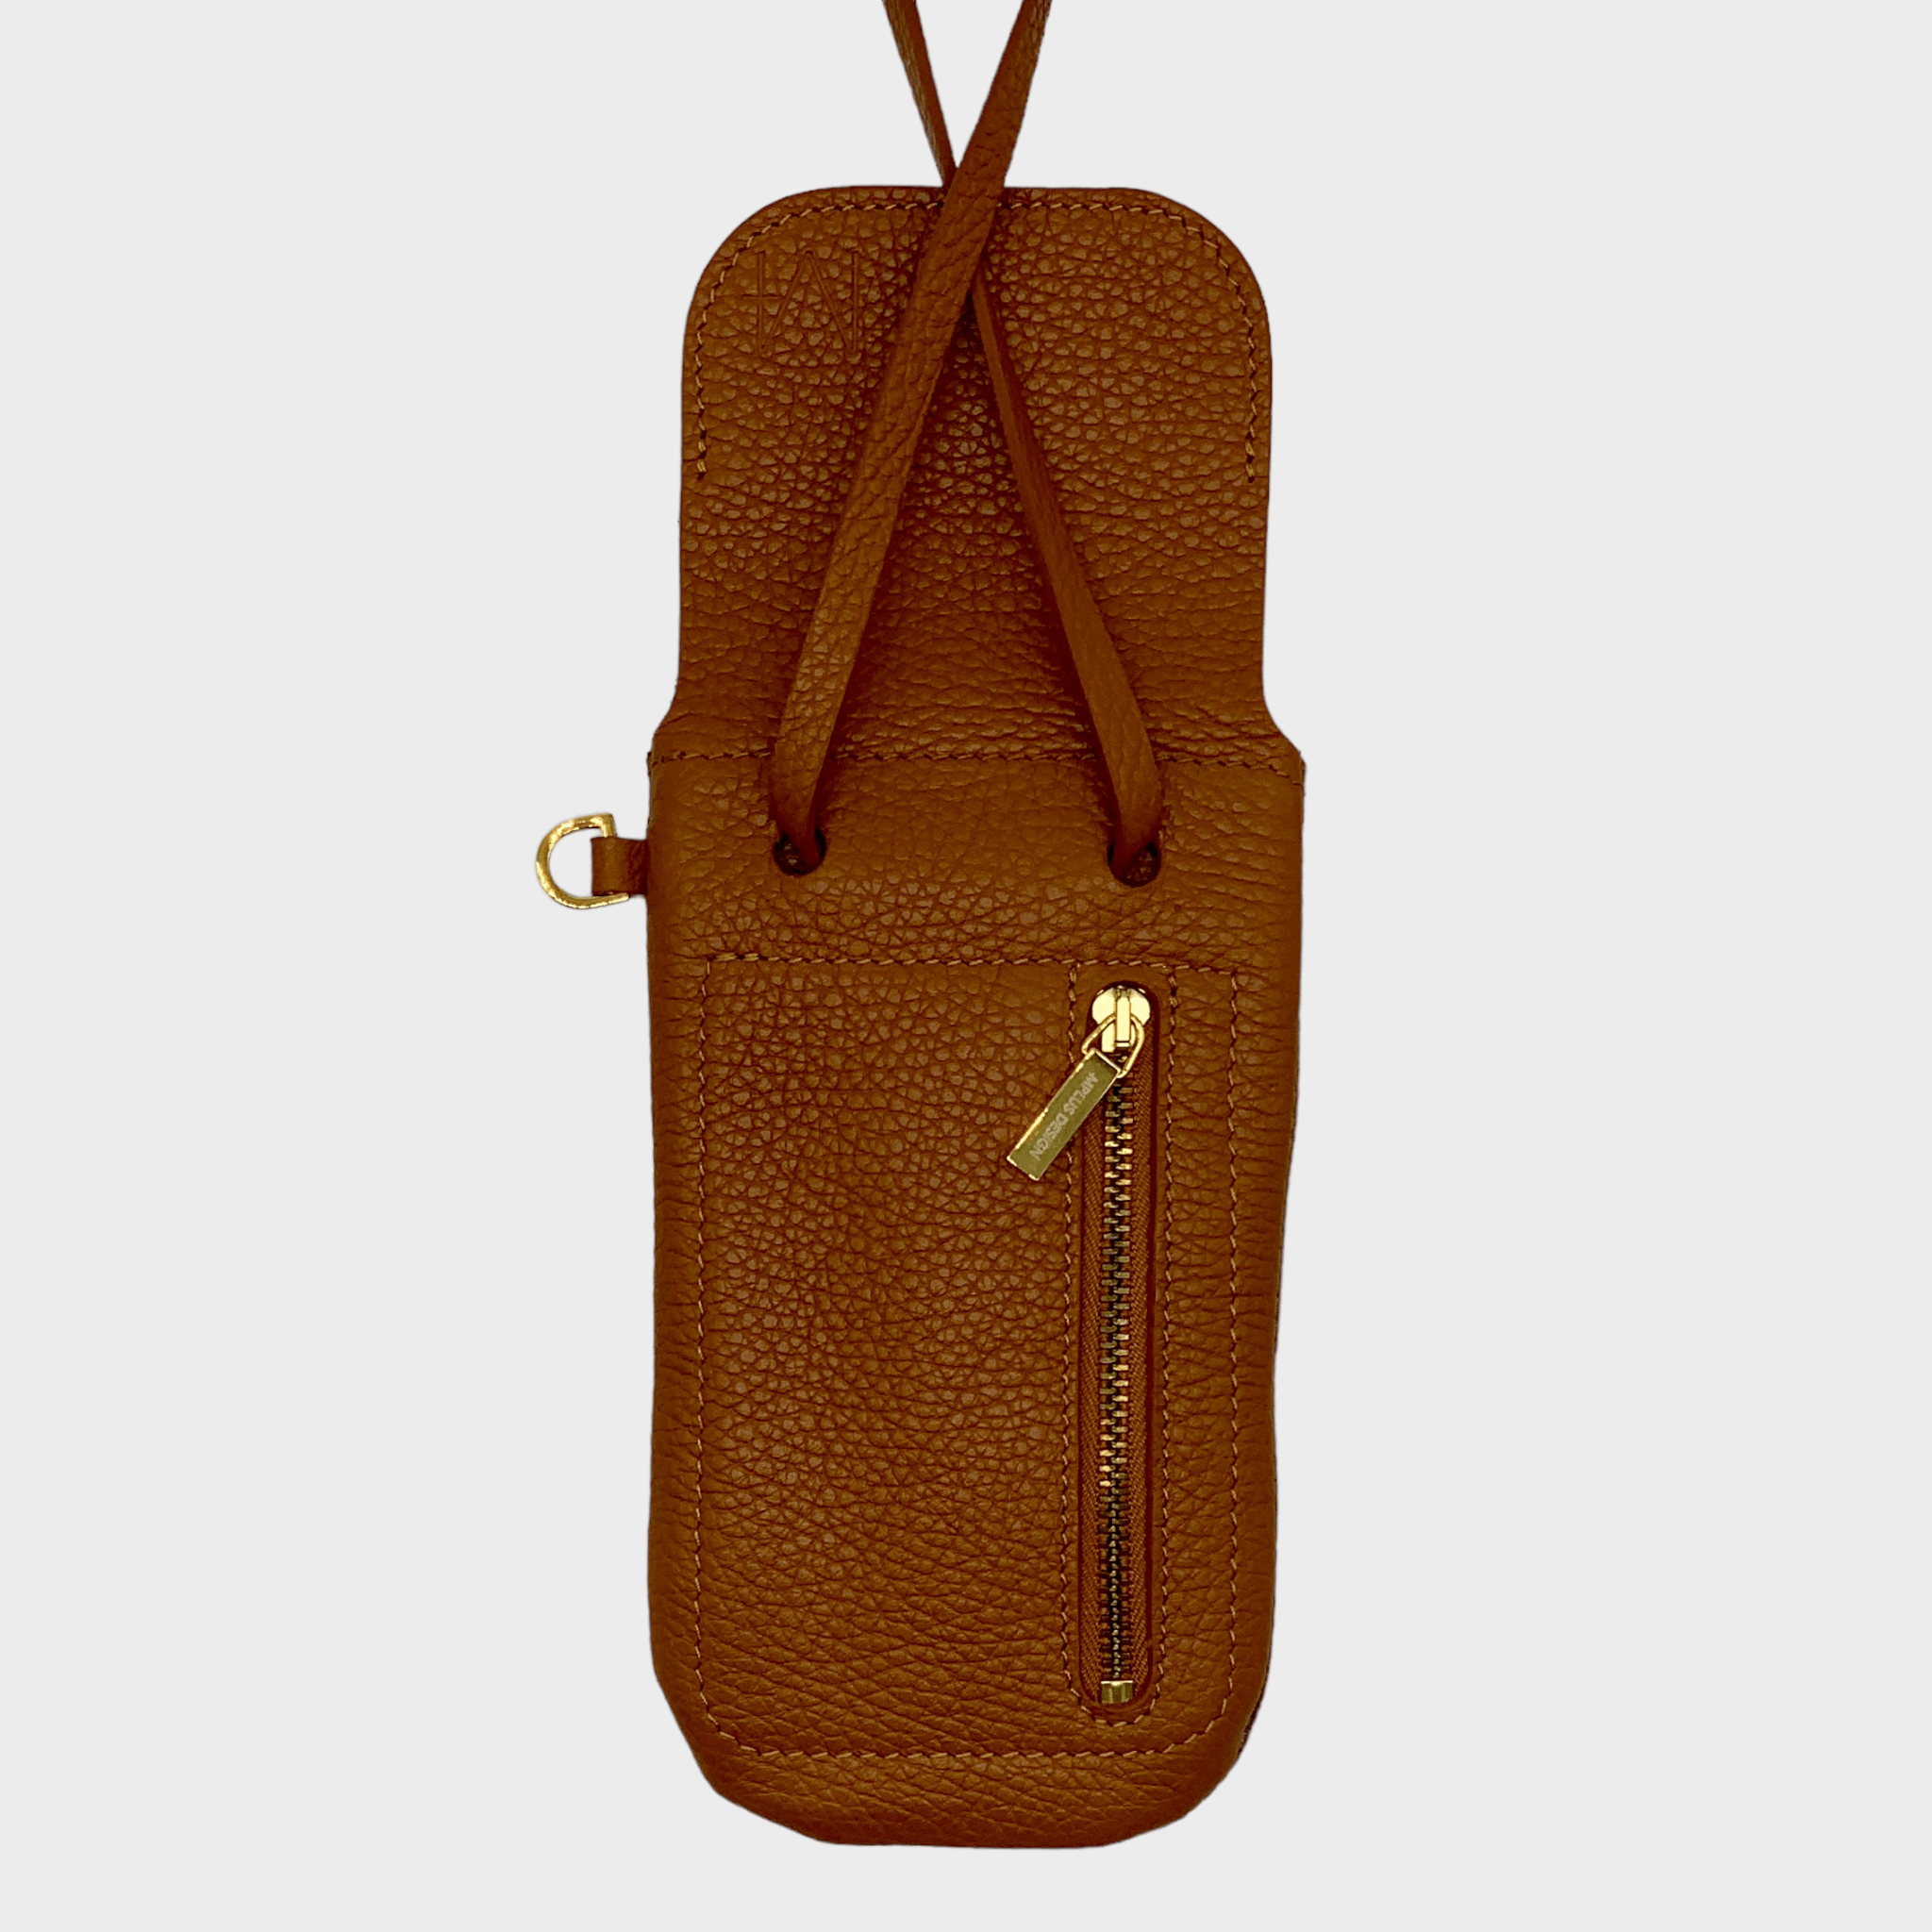 Phone bag 1.1  MPlus Design Handy Tasche zum Umhängen mit Geldfach – Mplus  Design